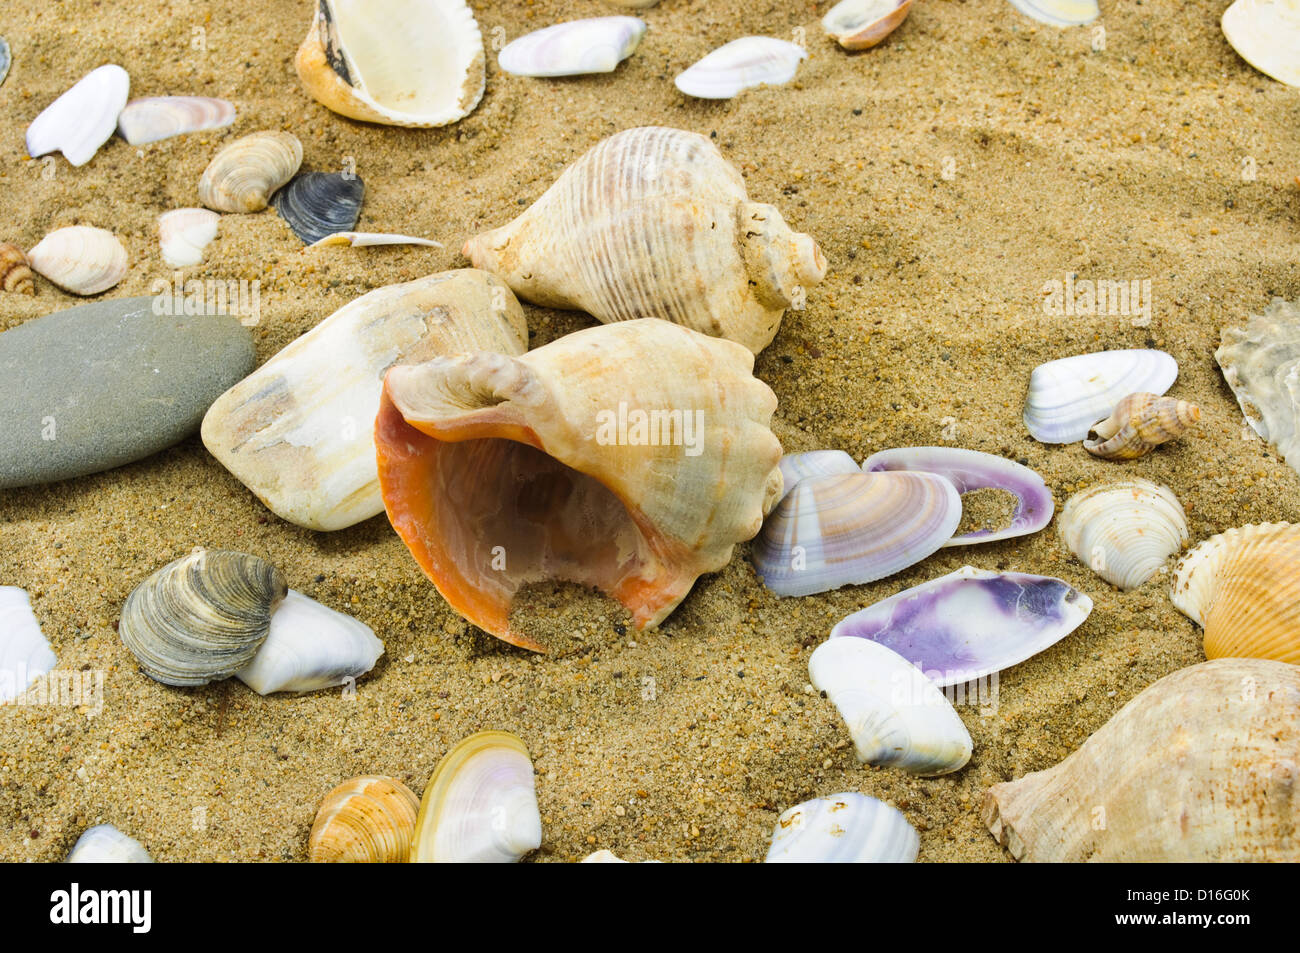 seashells on sand Stock Photo